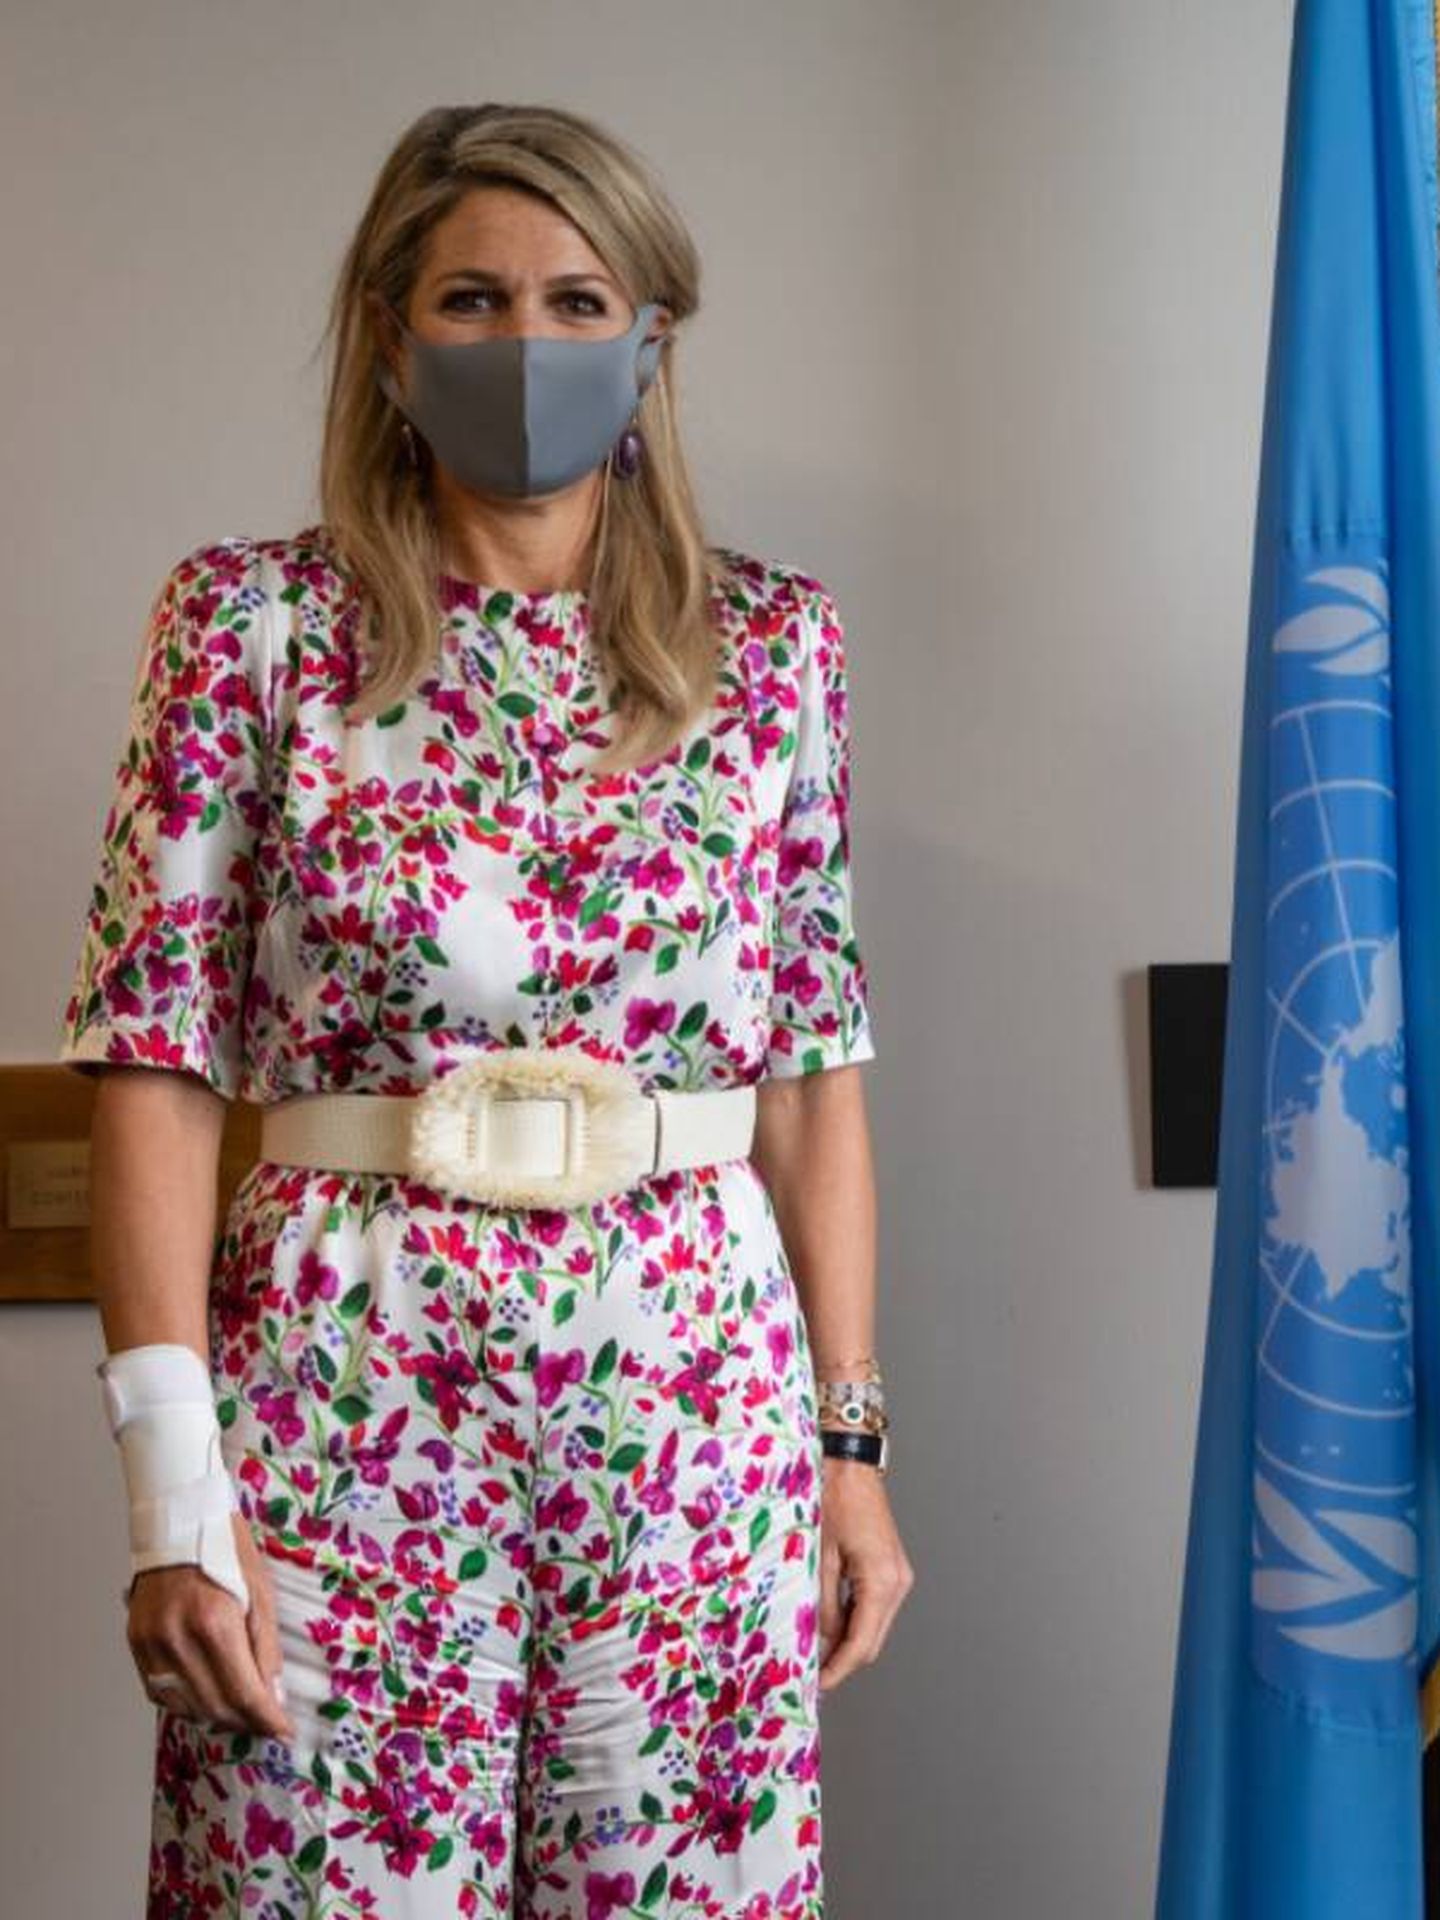 La reina Máxima, en la sede de la ONU. (Casa Real de los Países Bajos)